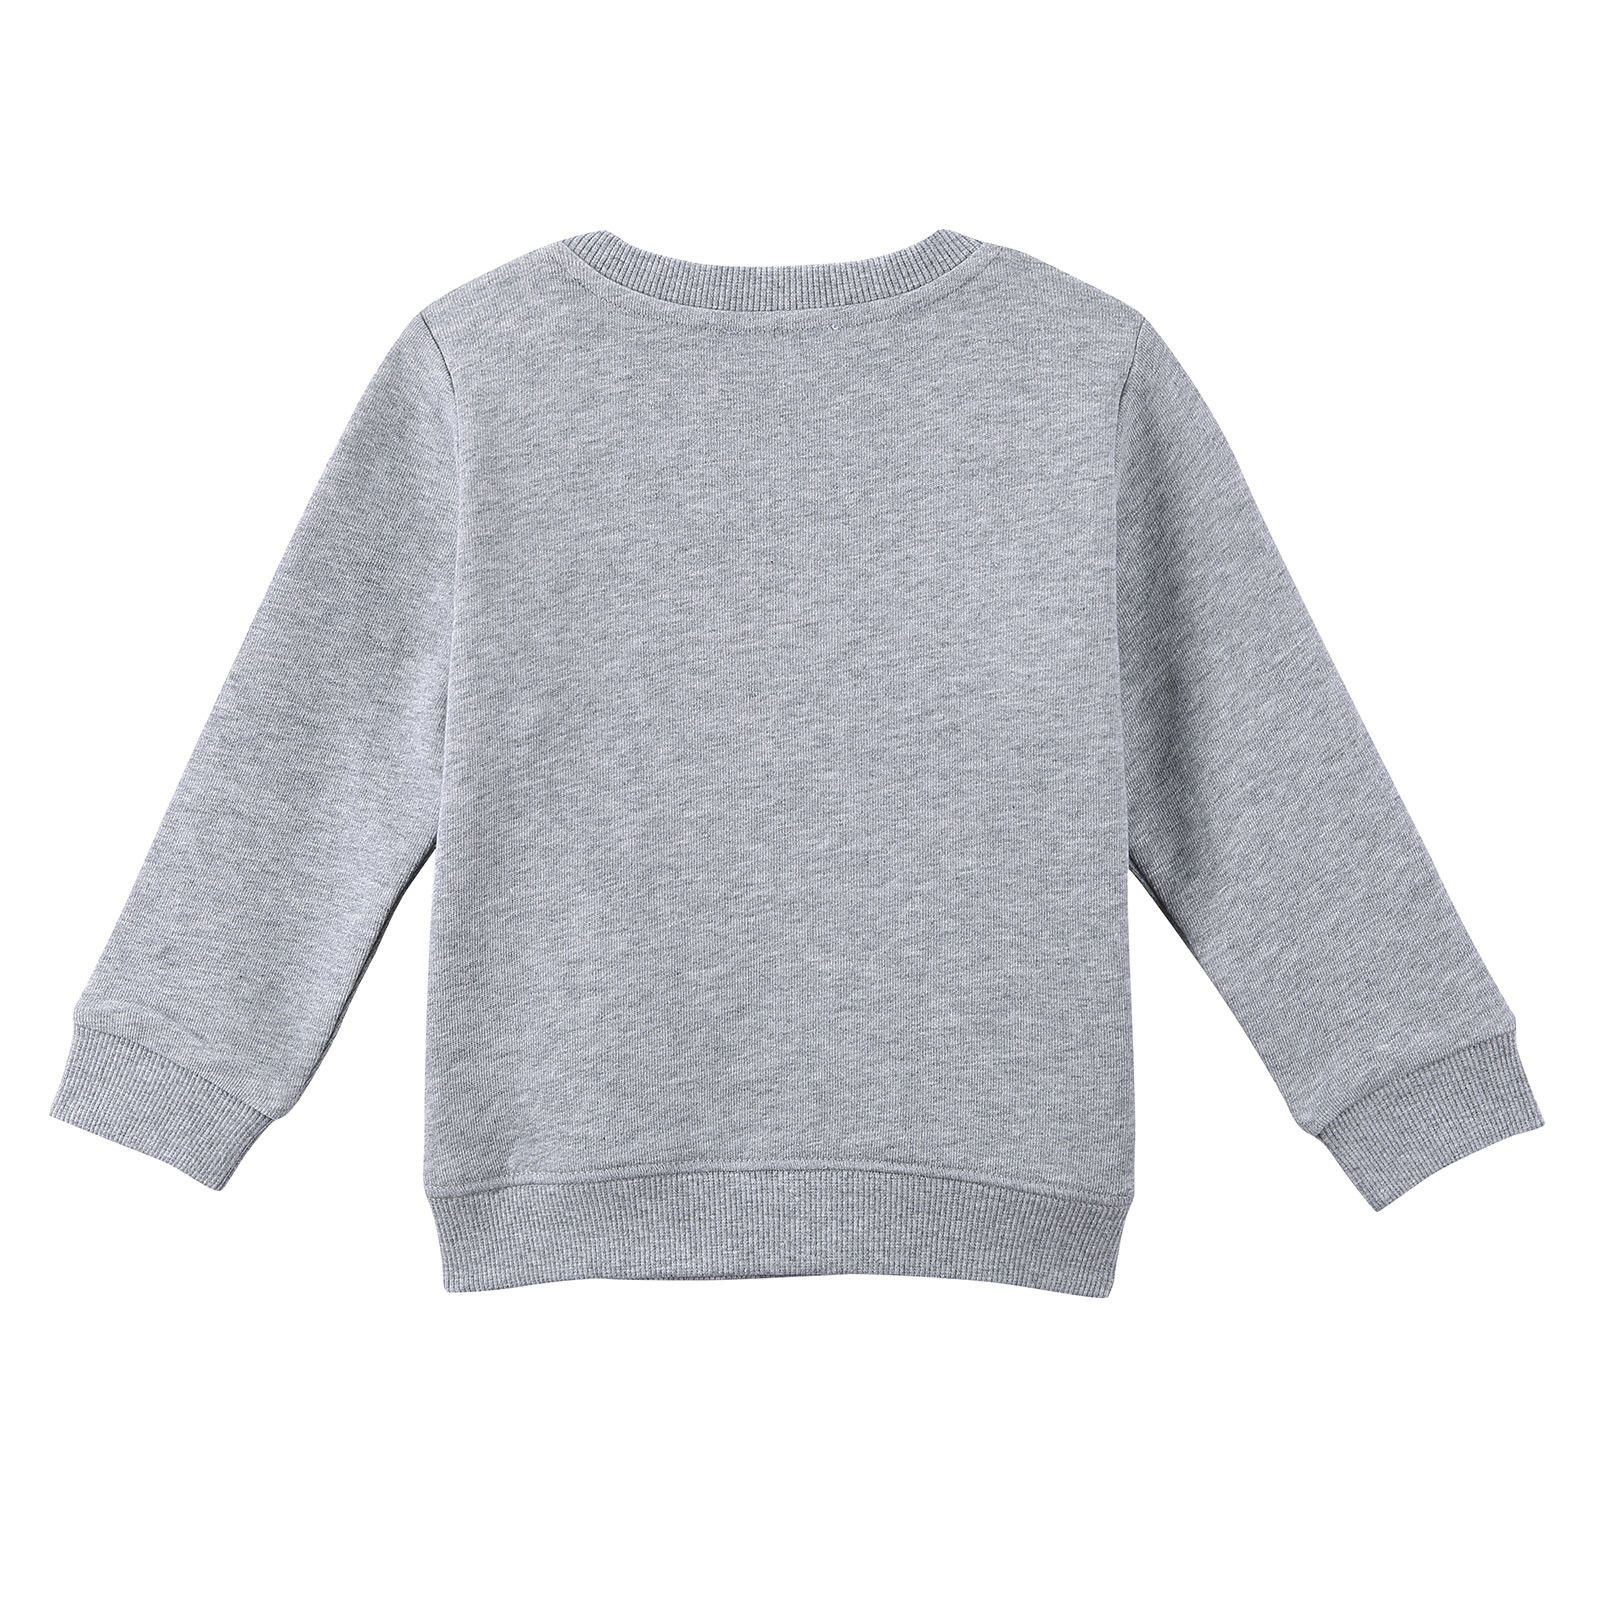 Girls Grey Embroidered Paris Eiffel Tower Cotton Sweatshirt - CÉMAROSE | Children's Fashion Store - 3